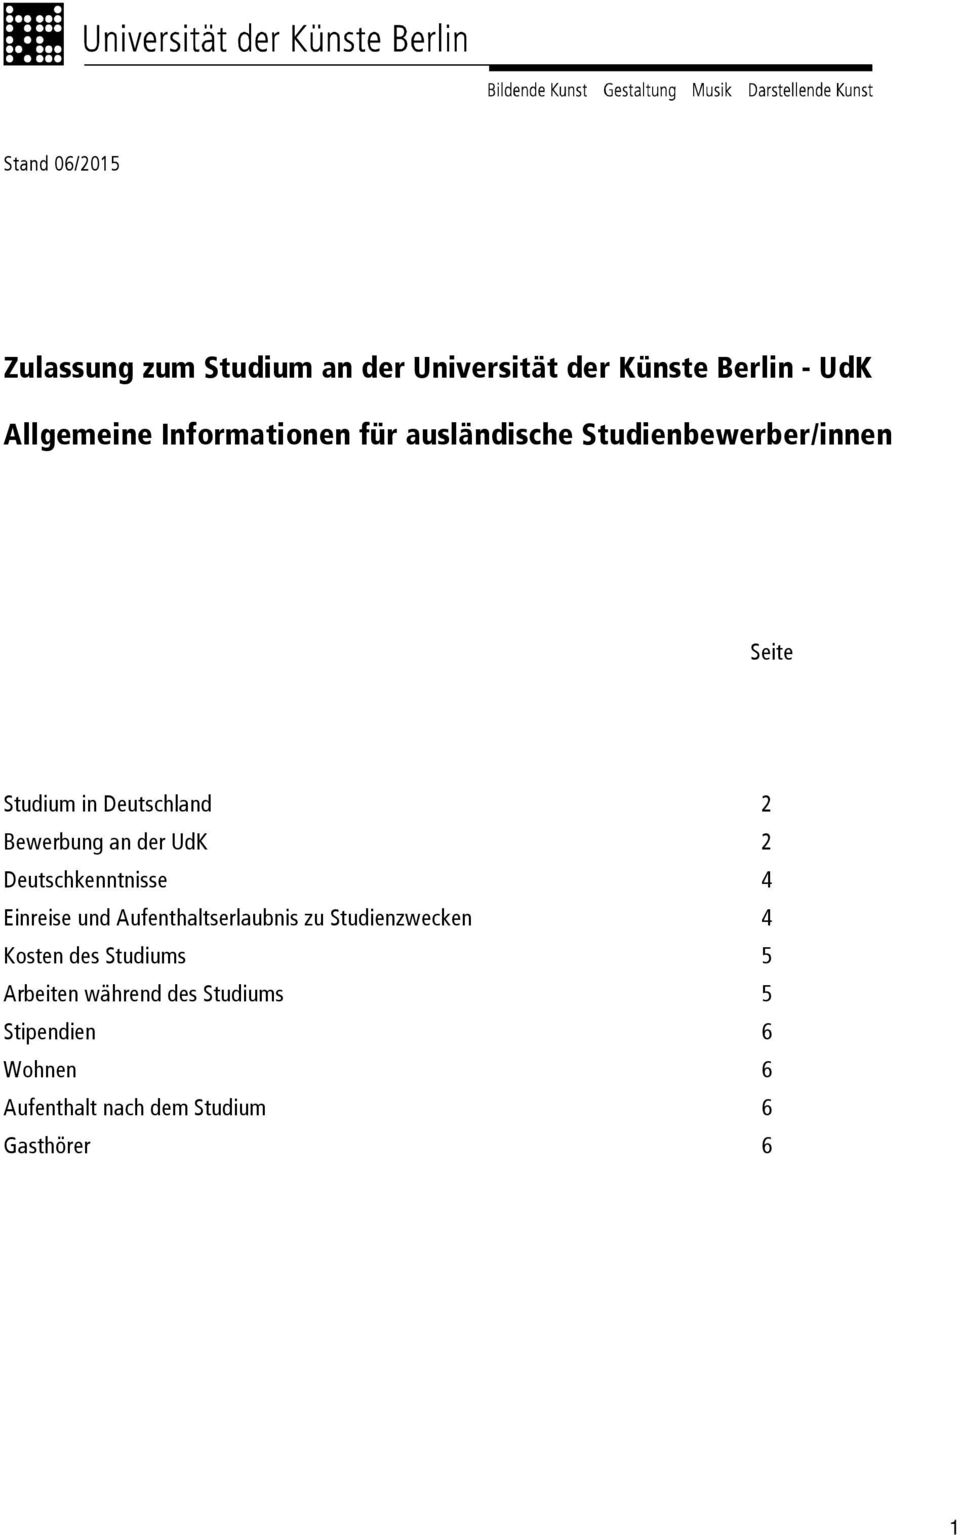 Zulassung Zum Studium An Der Universitat Der Kunste Berlin Udk